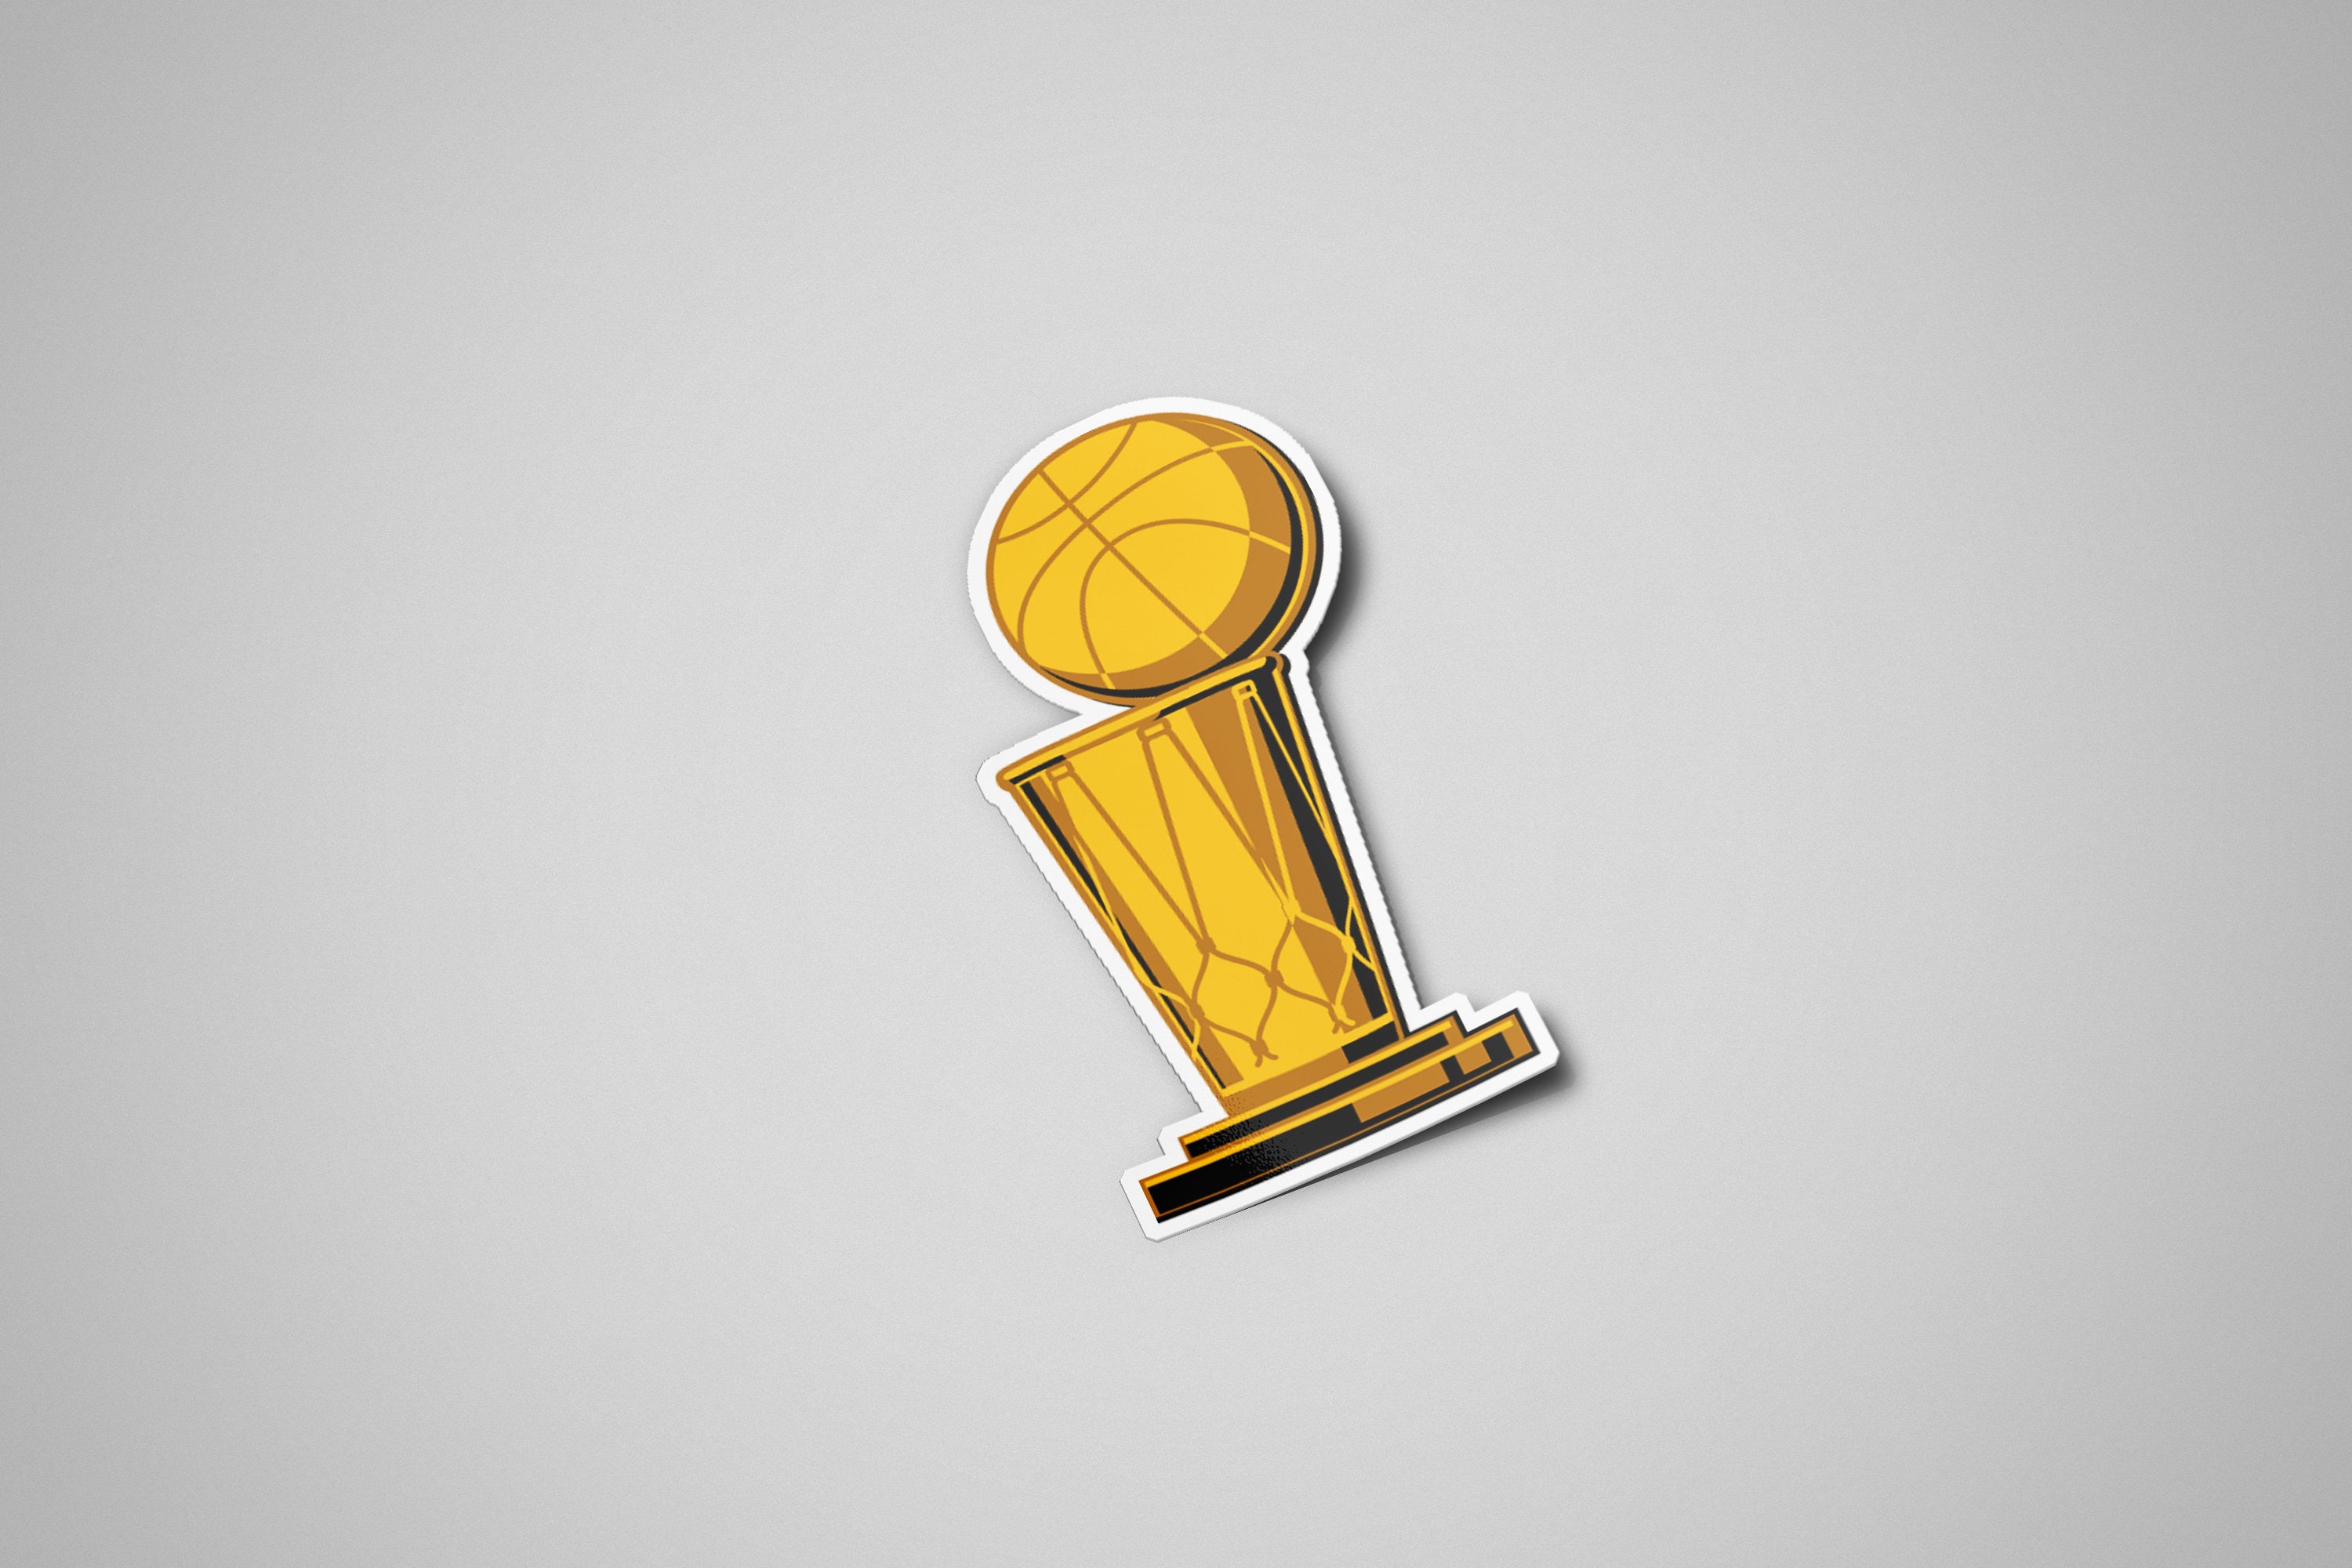 NBA Trophy- Championship - NBA Finals- Larry O’Brien